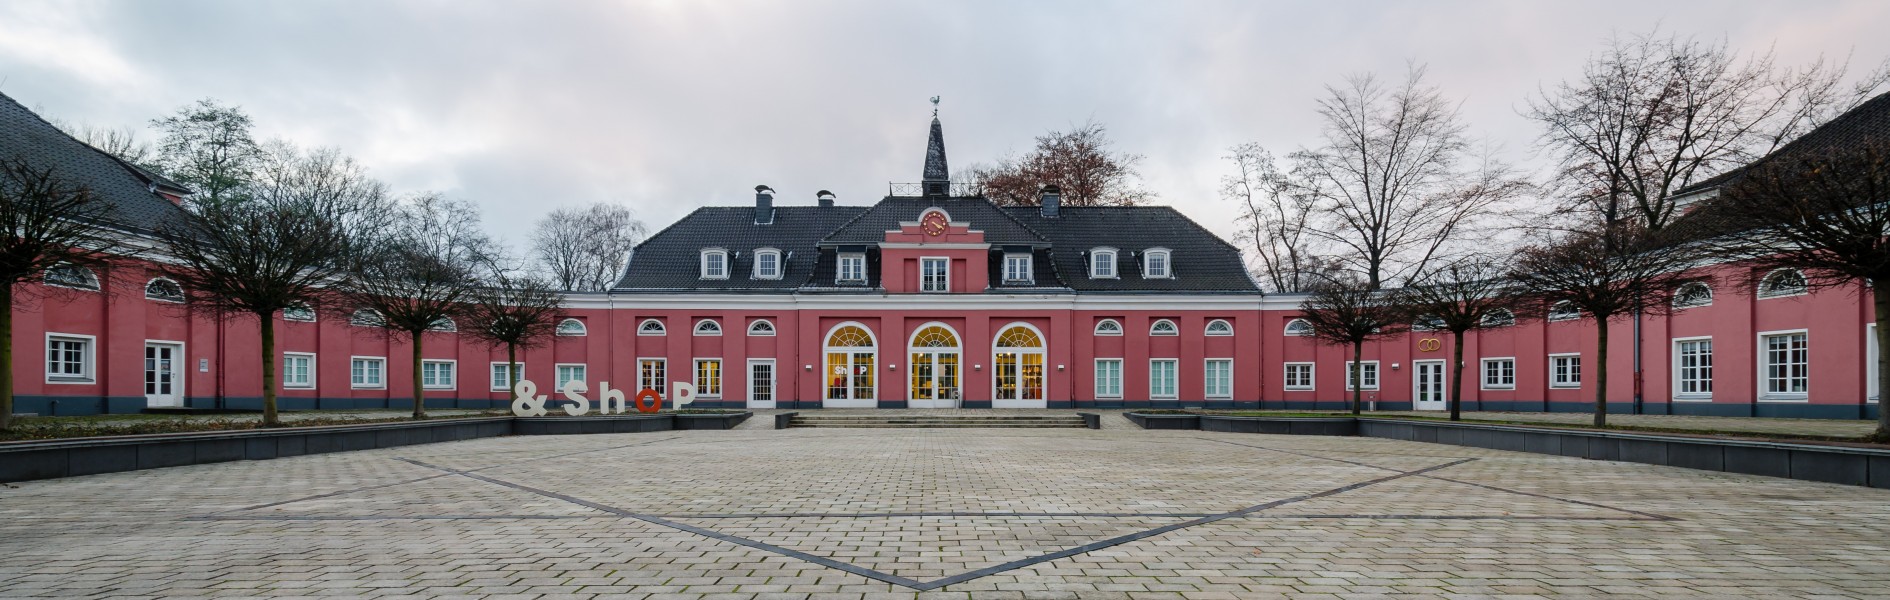 Schloss-Oberhausen-Innenhof-2012